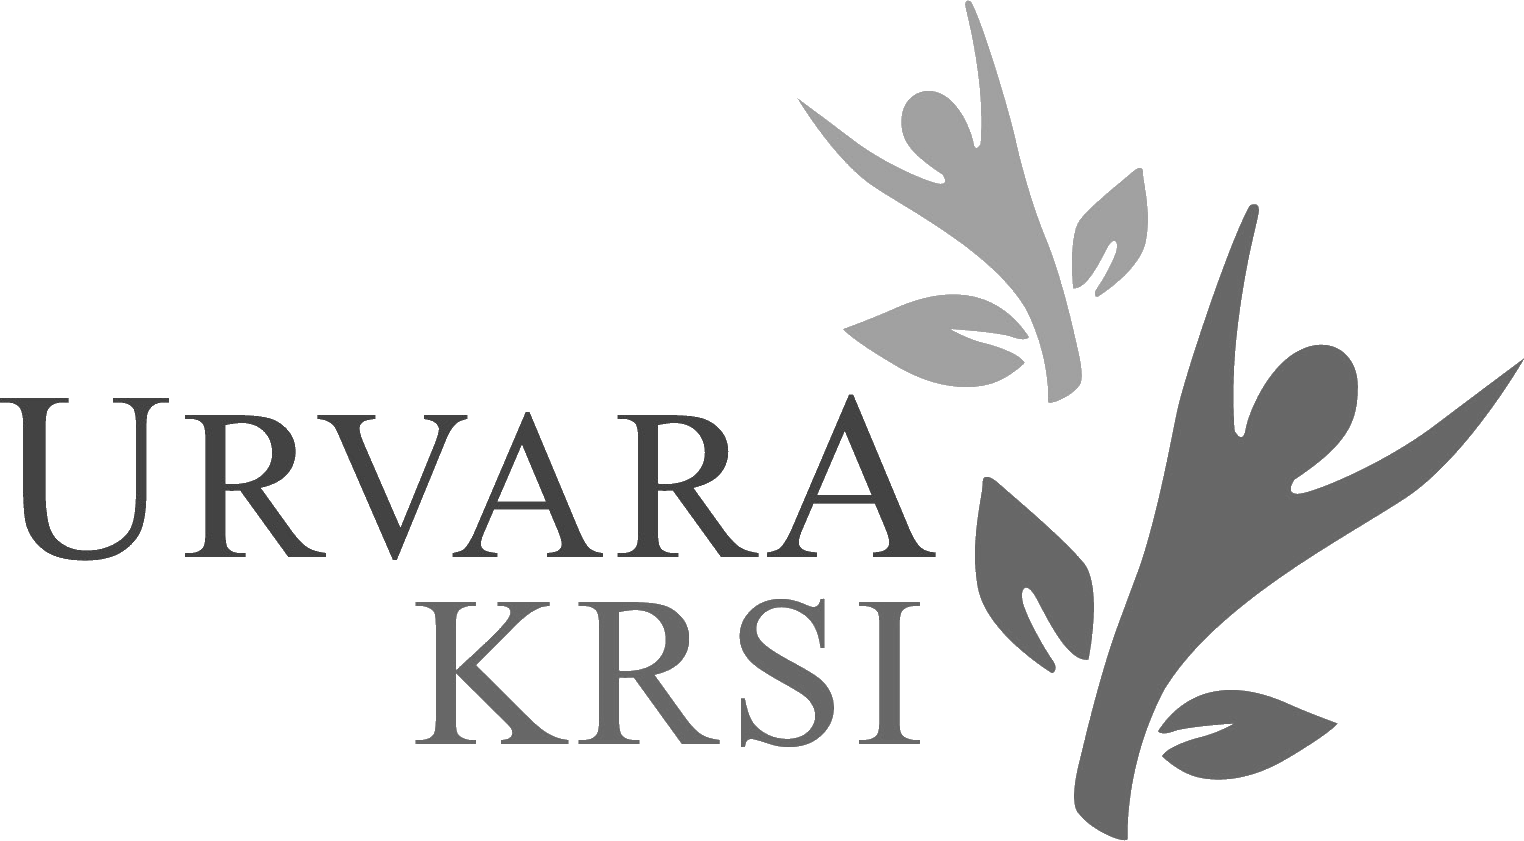 Urvara Krsi Logo [Image | Dictum Media]